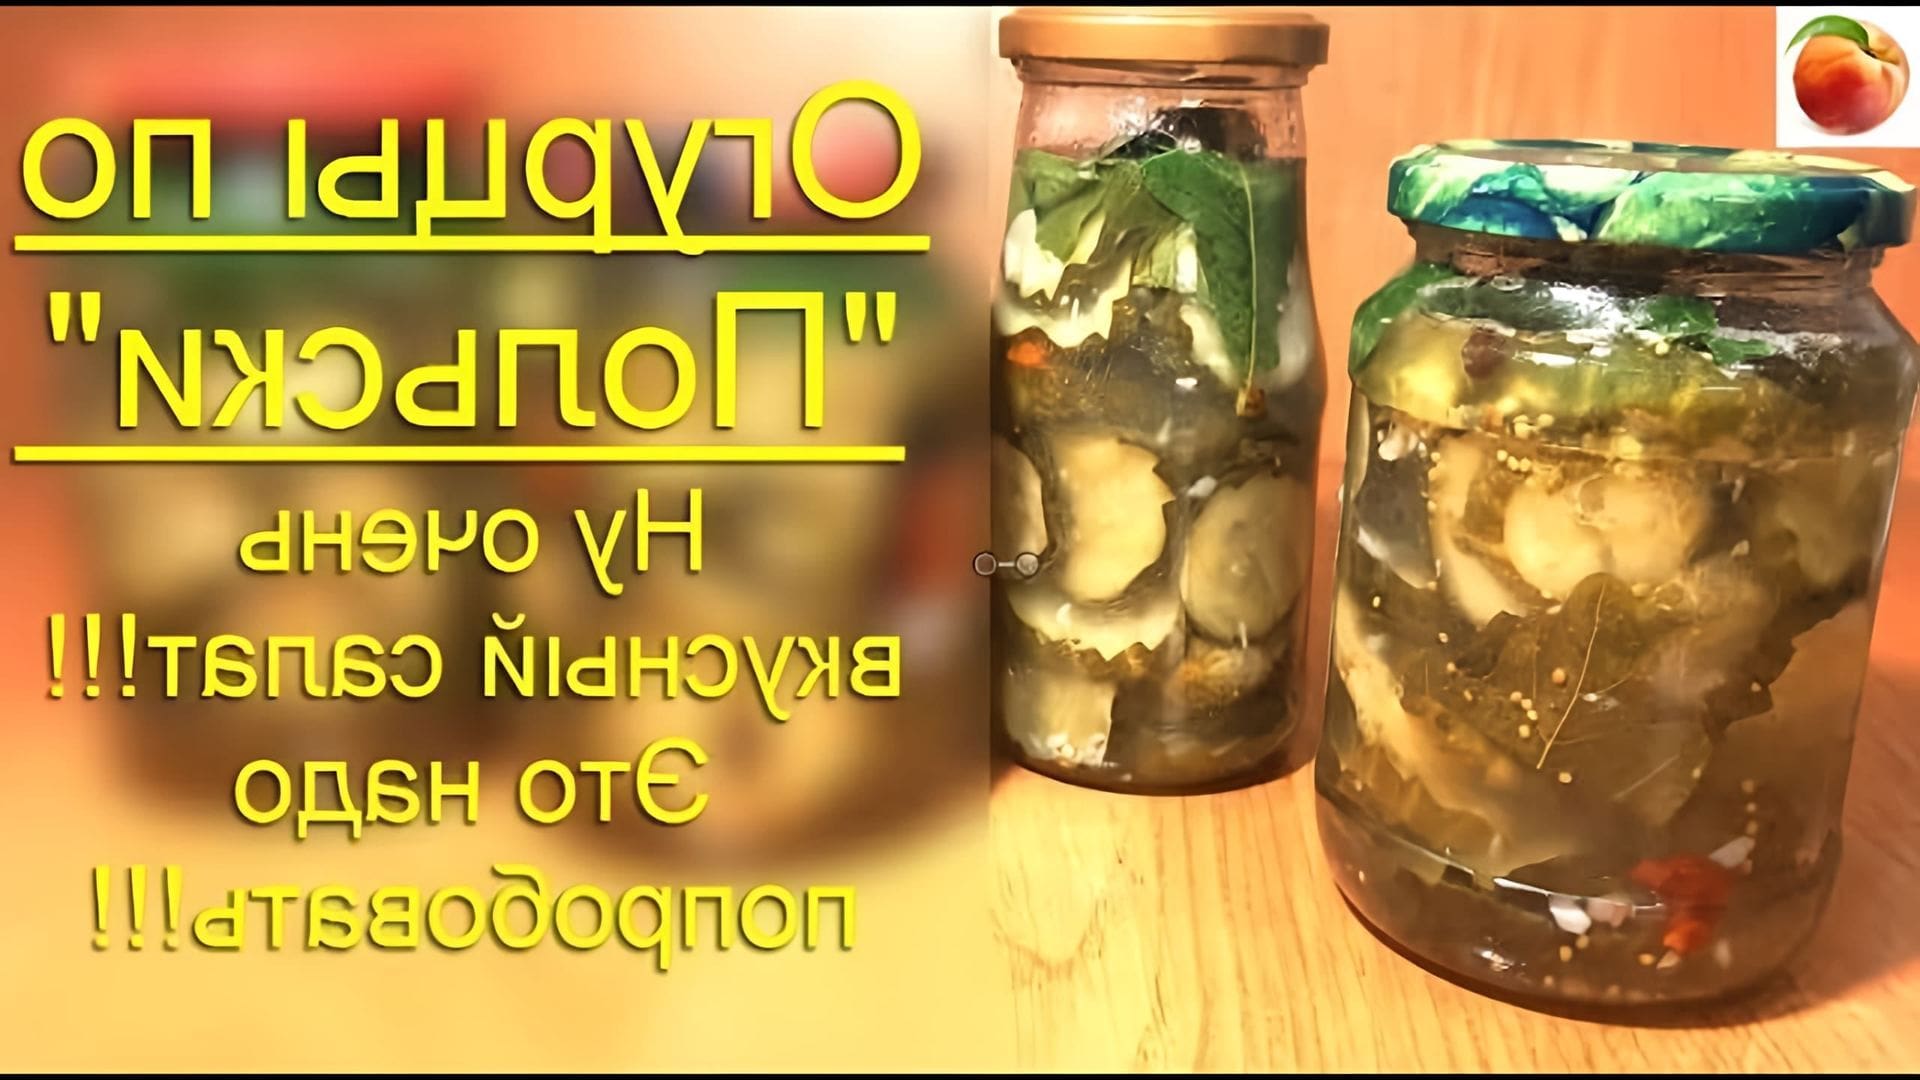 Здравствуйте! #Огурцы# - одна из наших любимых культур! Летом их вырастает много и есть очень вкусные рецепты... 